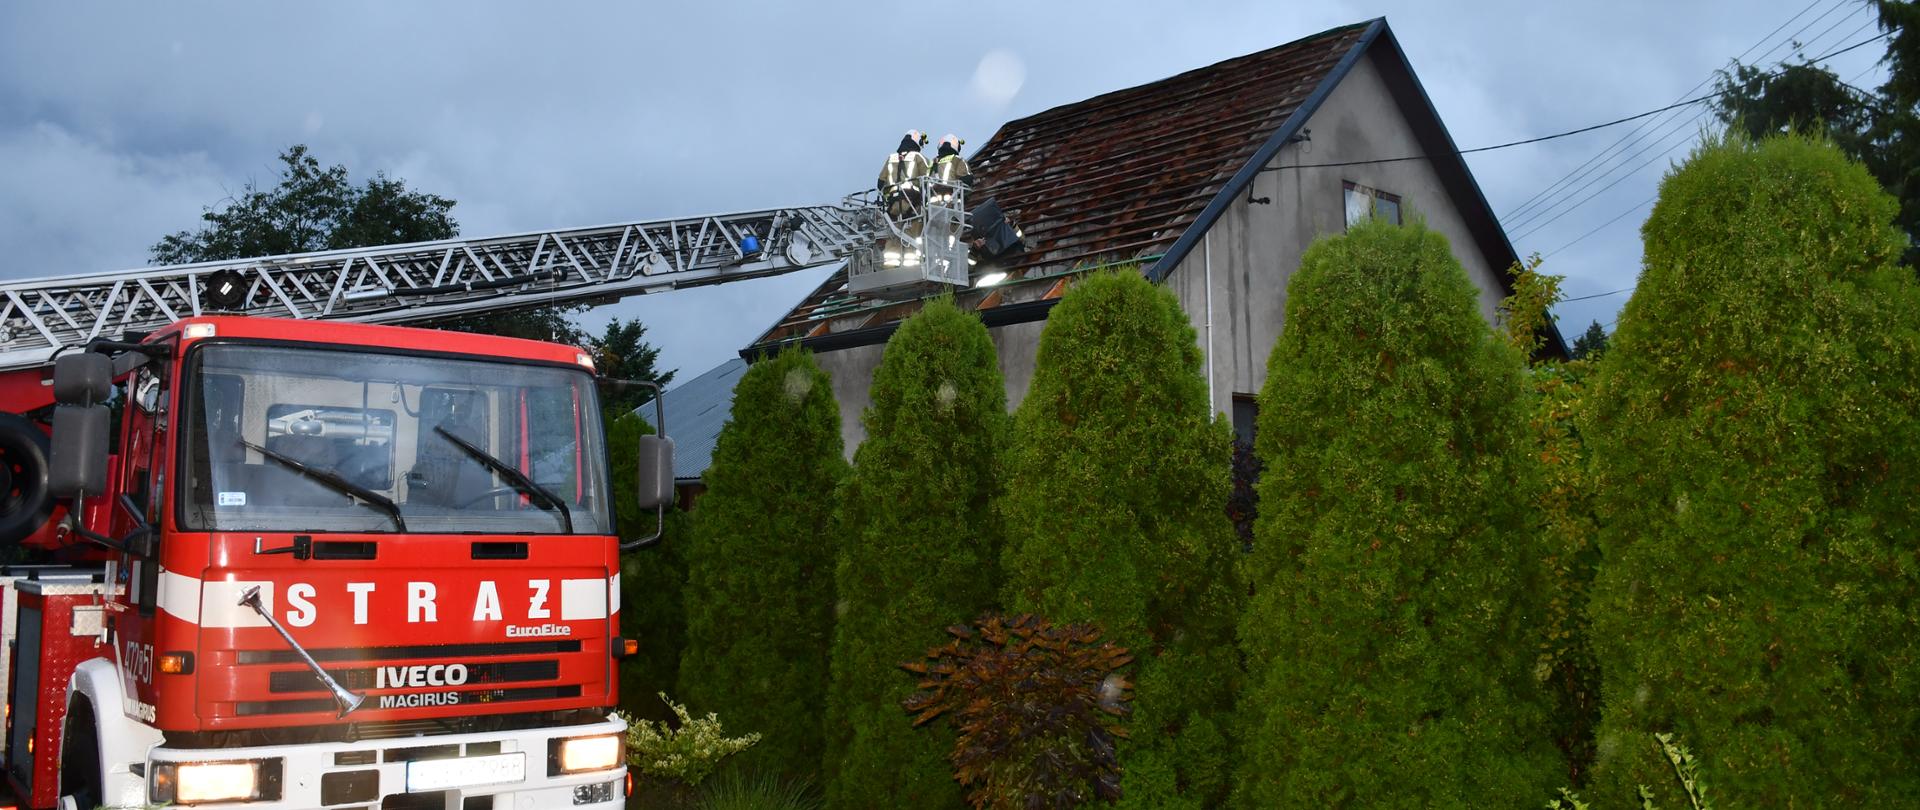 Na zdjęciu widzimy strażaków pracujących na podnośniku, którzy zabezpieczają dach budynku.